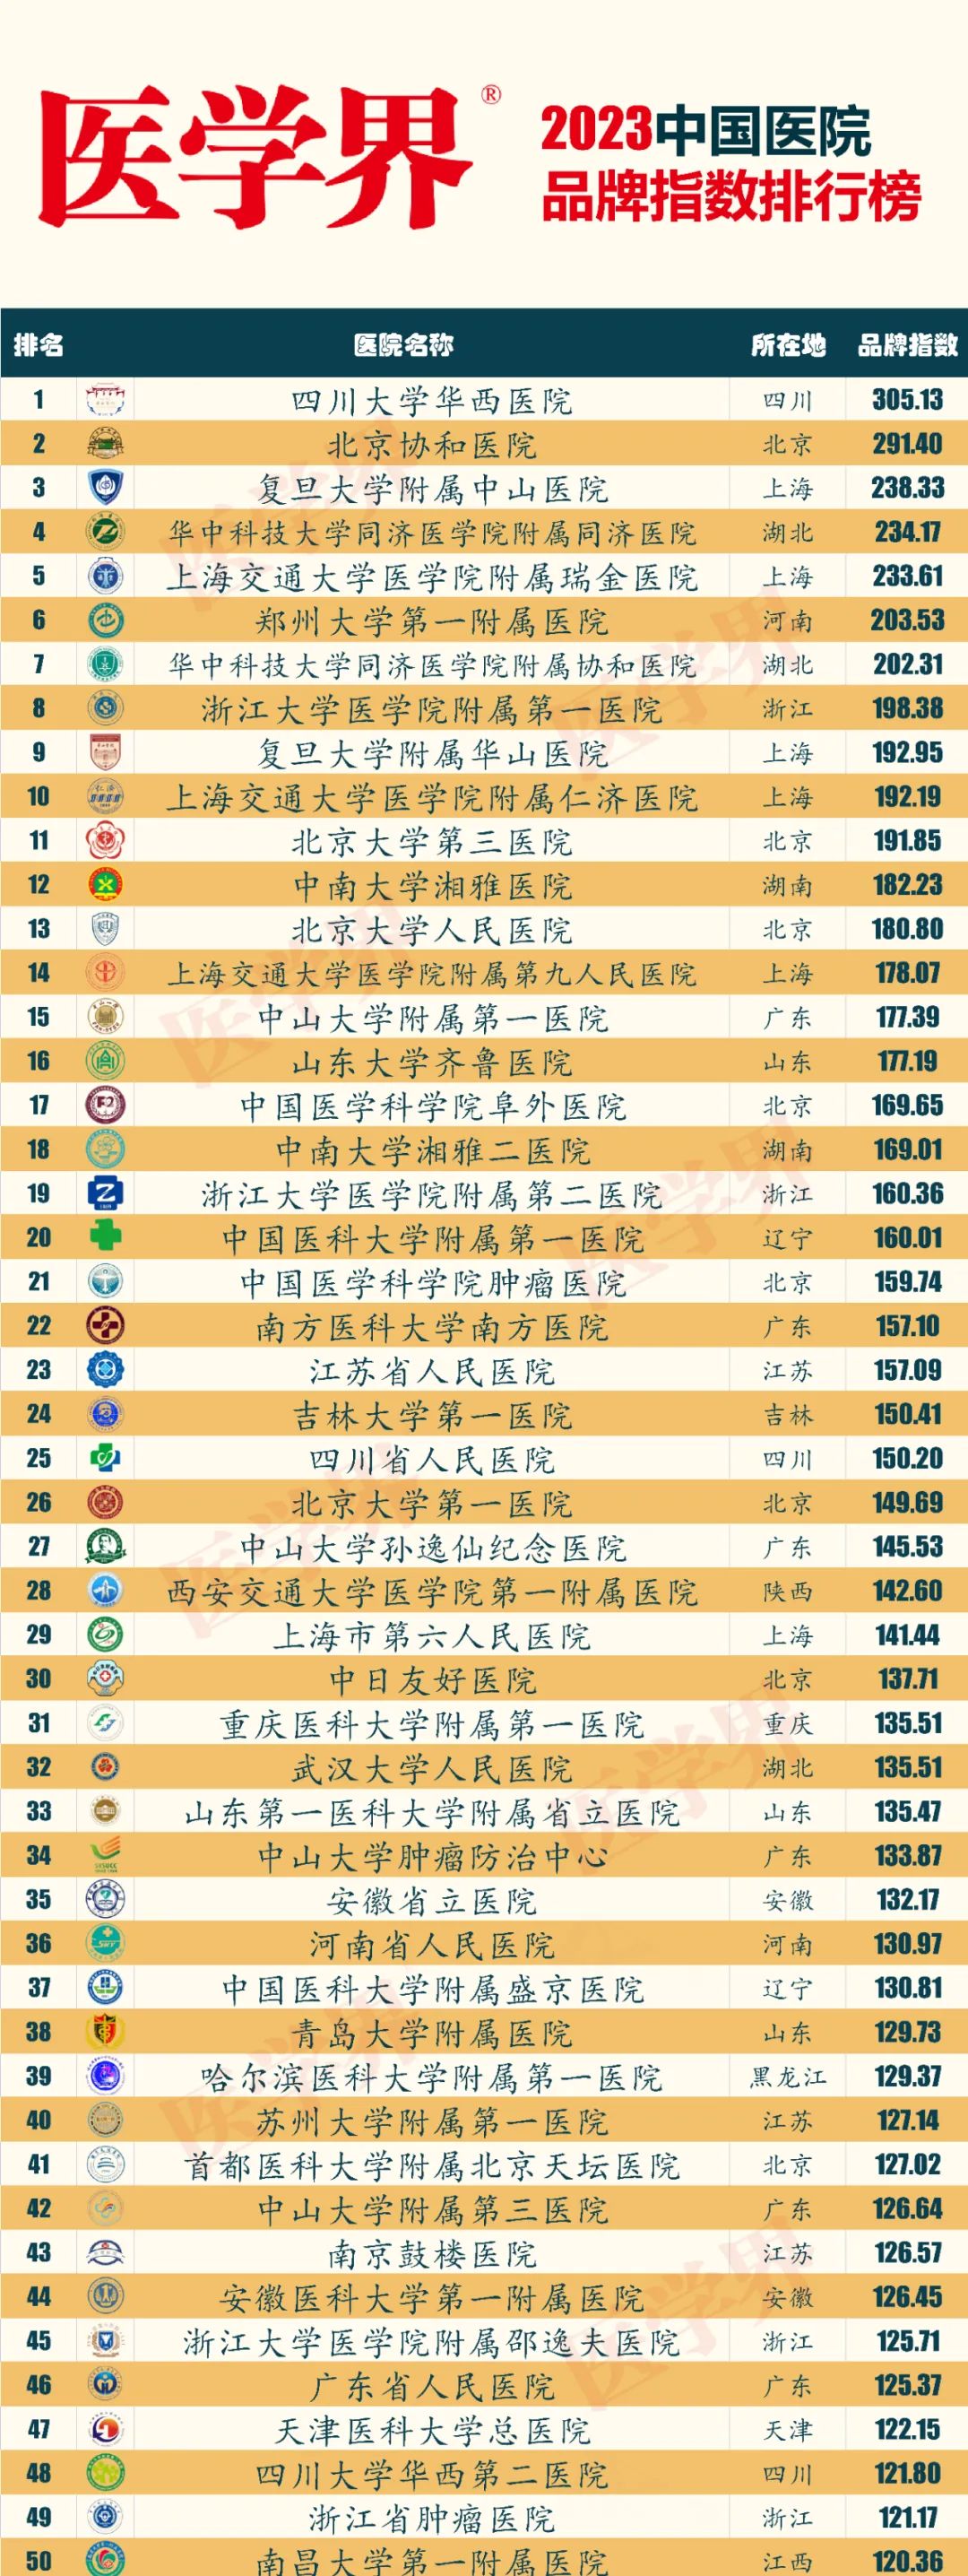 中国首个公立医院品牌指数排行榜出炉